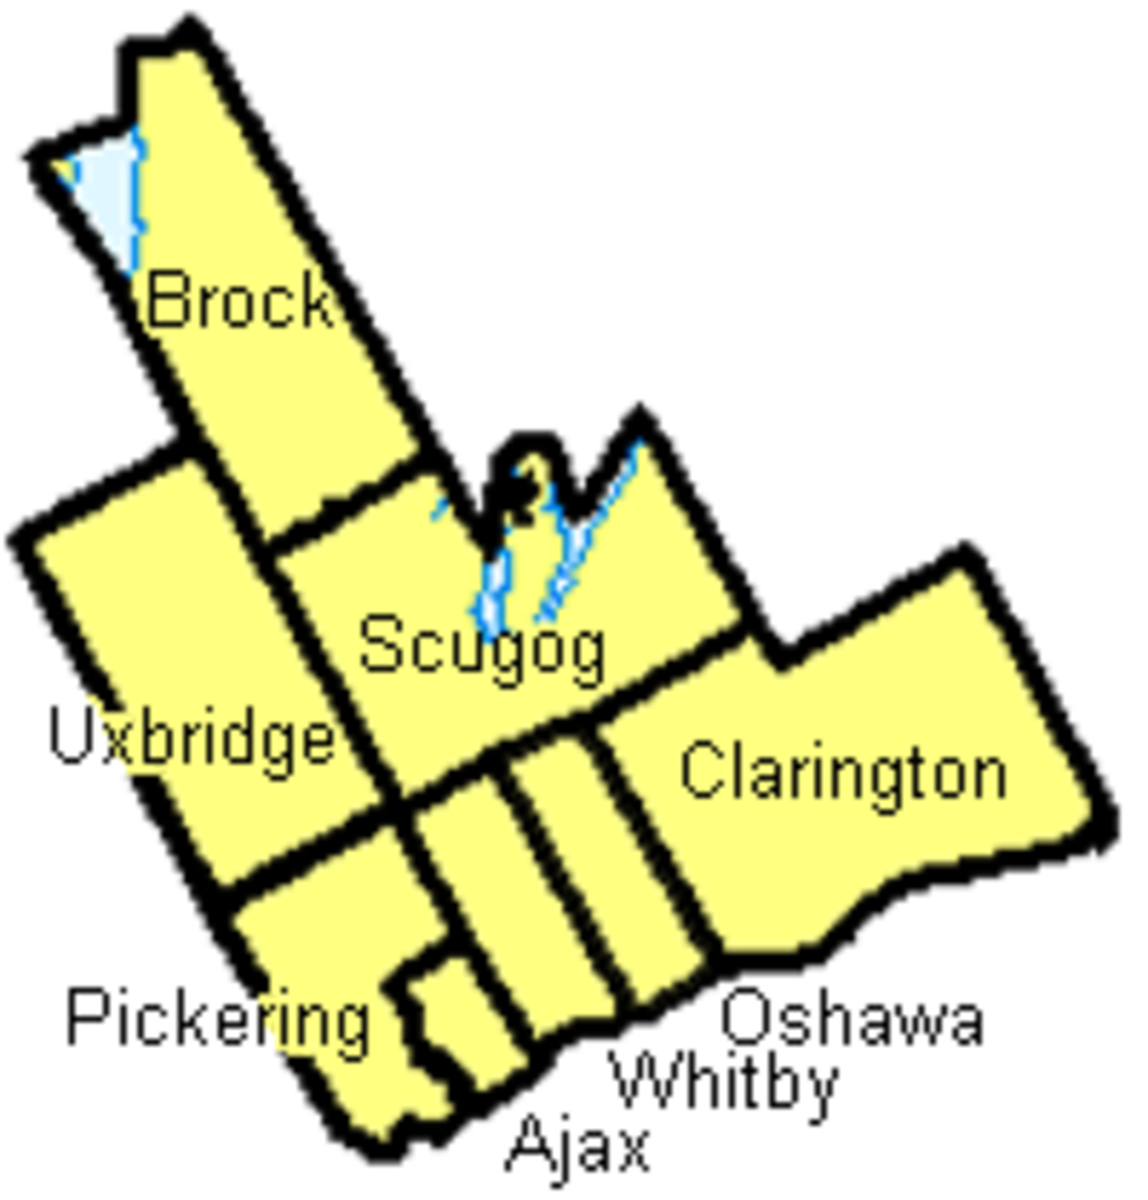 Ontario's Durham region